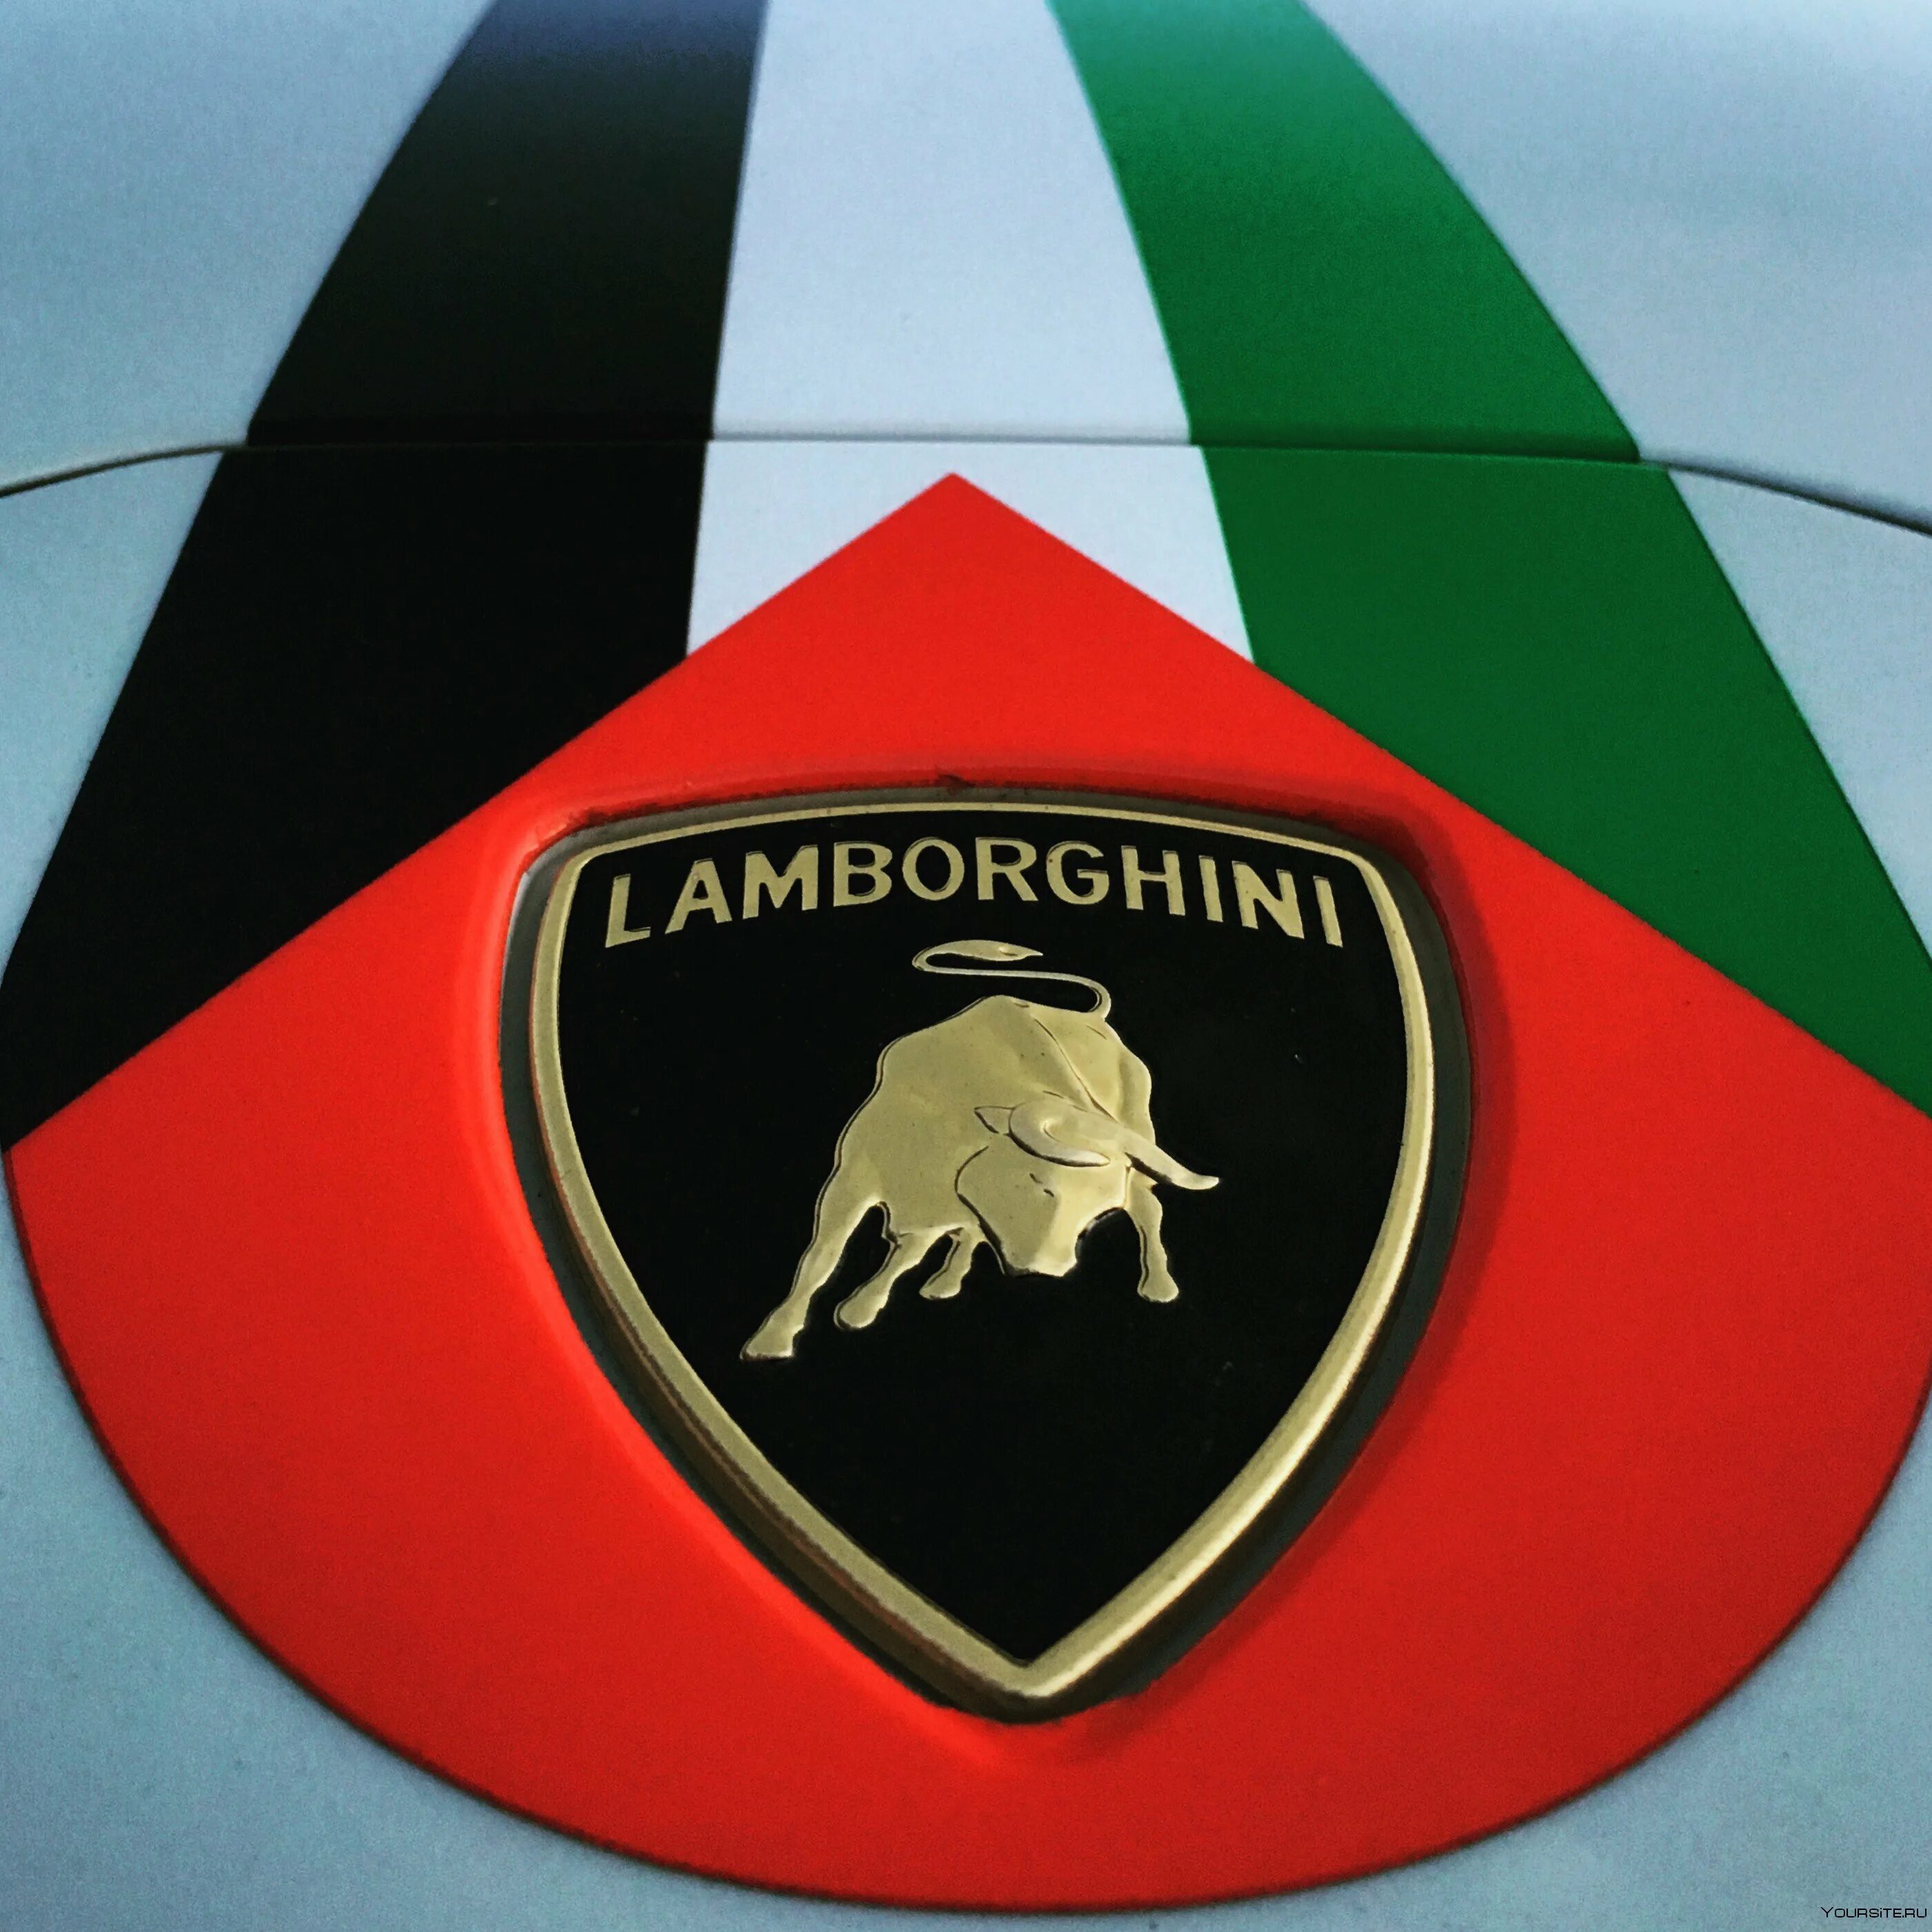 Ламба значок. Ламборгини. Марка машины Lamborghini. Ламборгини эмблема. Значок машины Ламборджини.